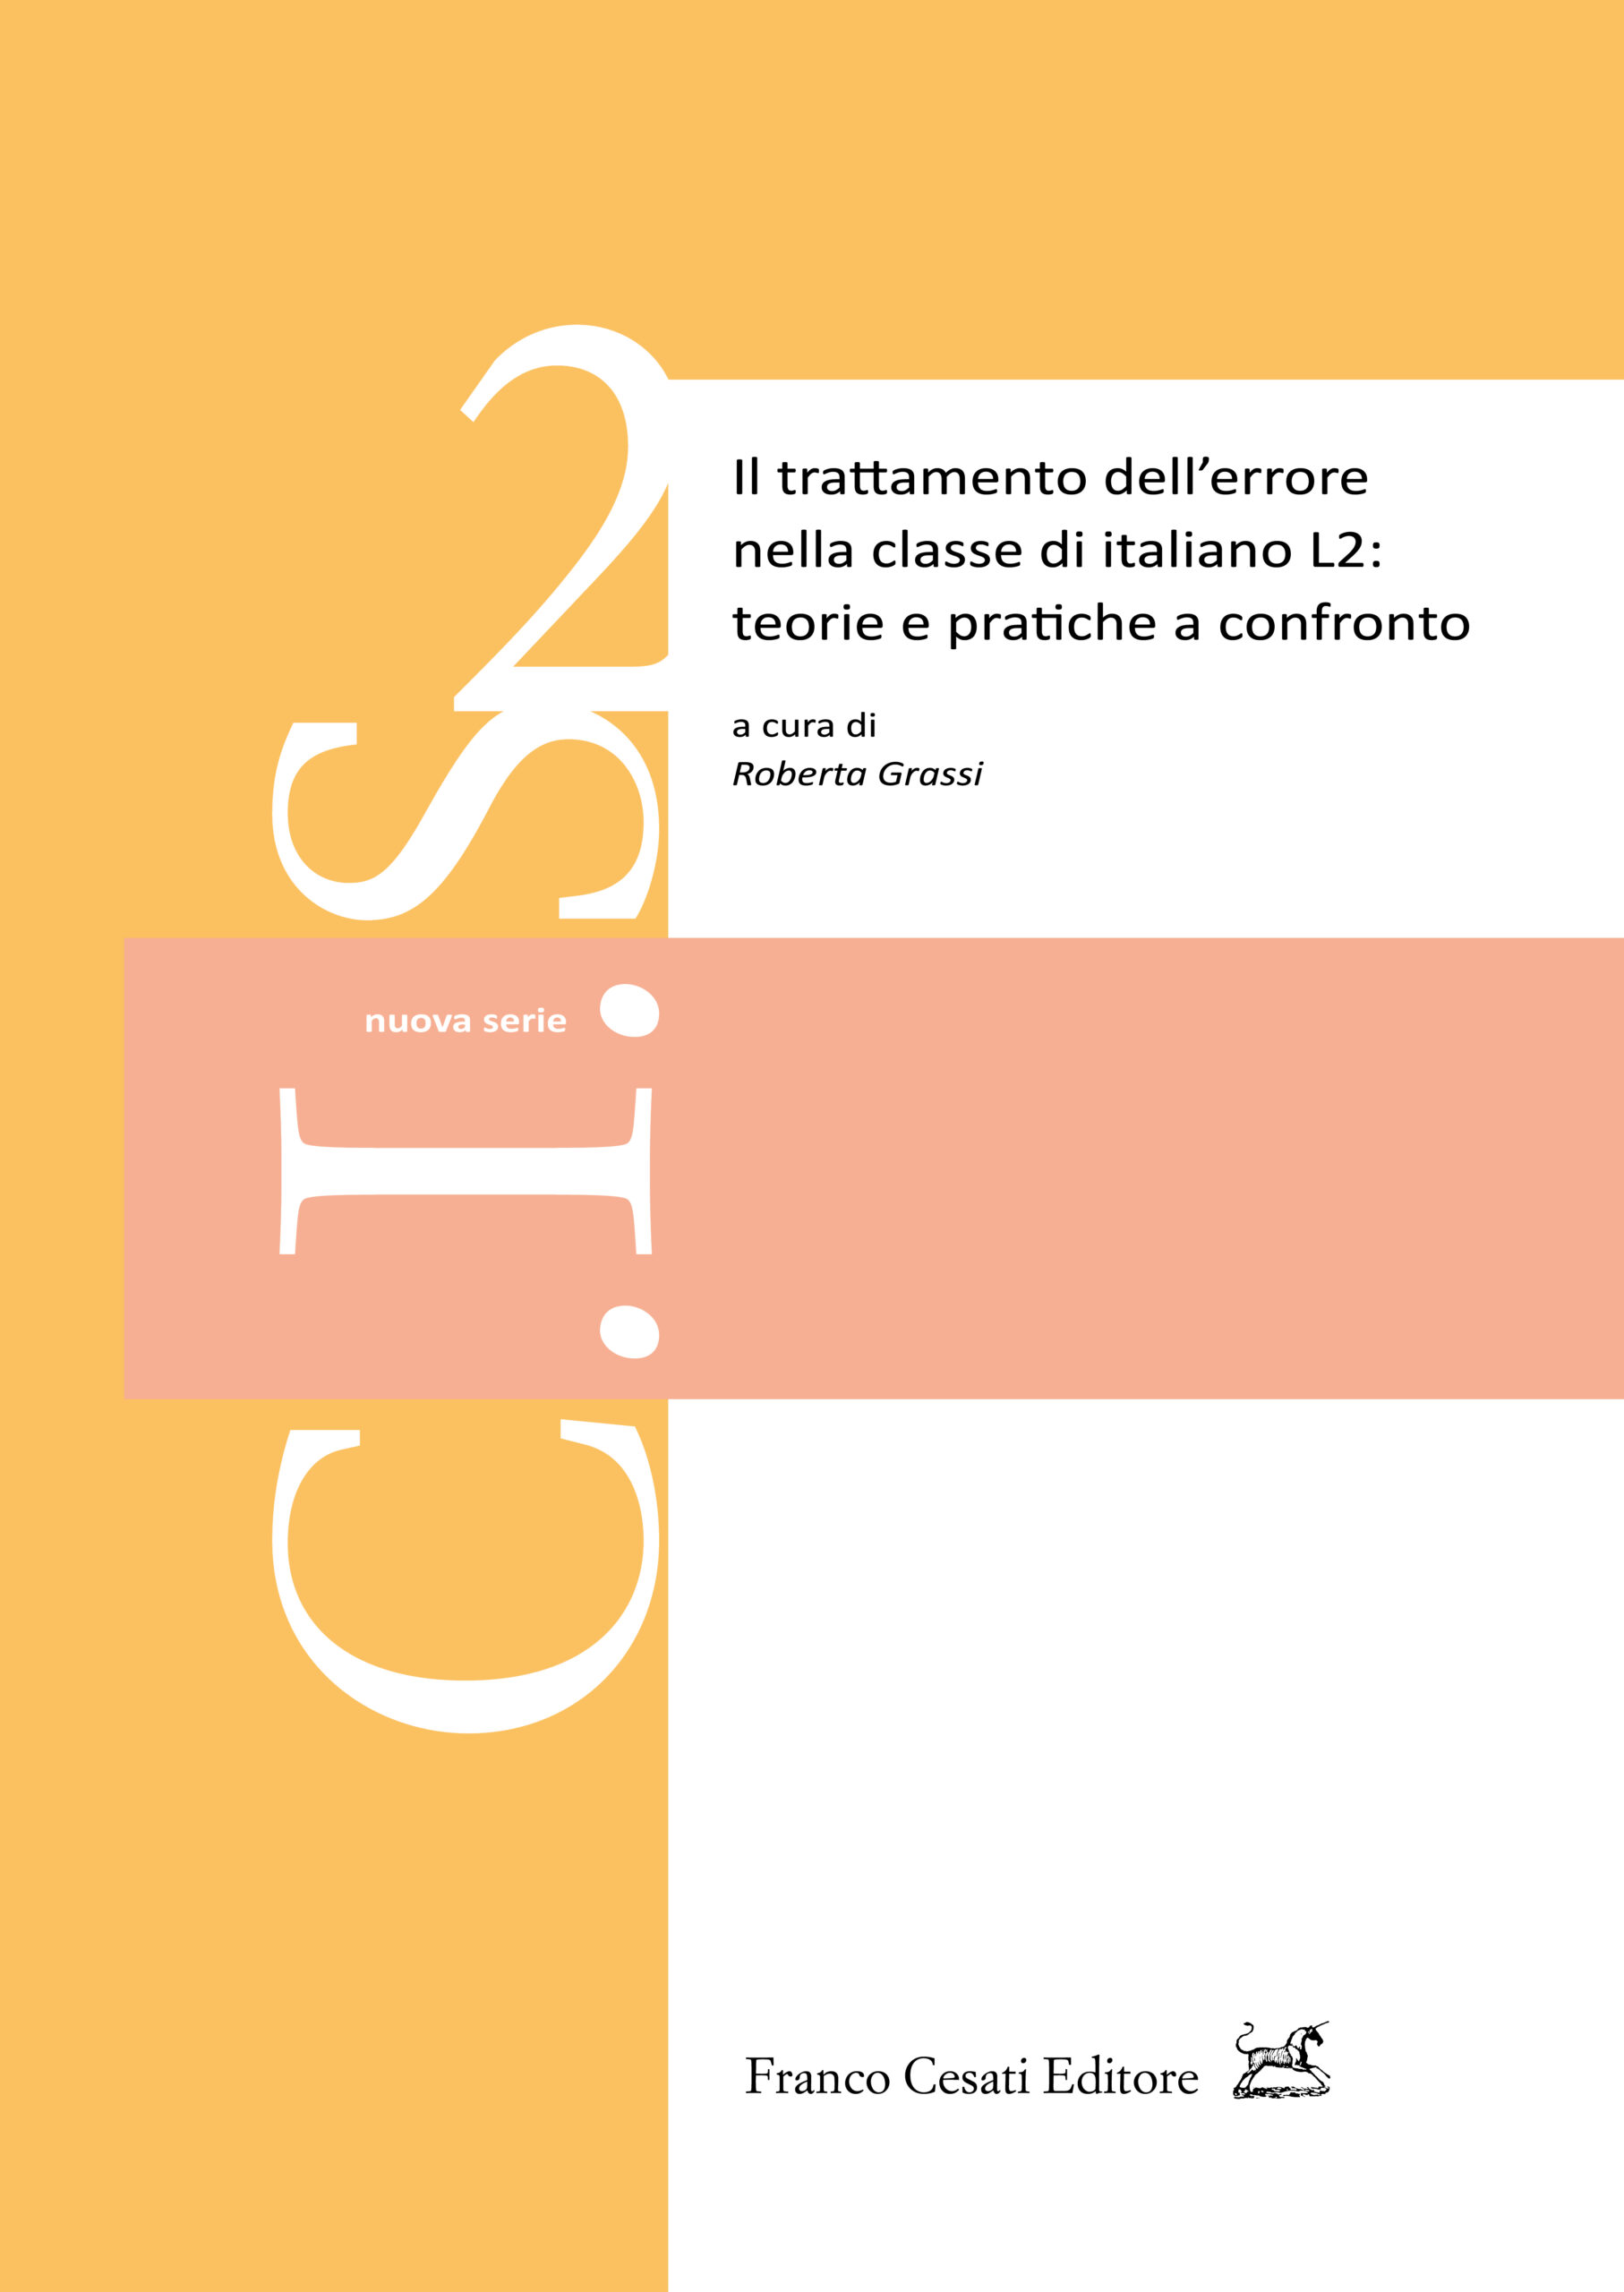 Il trattamento dellʼerrore nella classe di italiano L2: teorie e